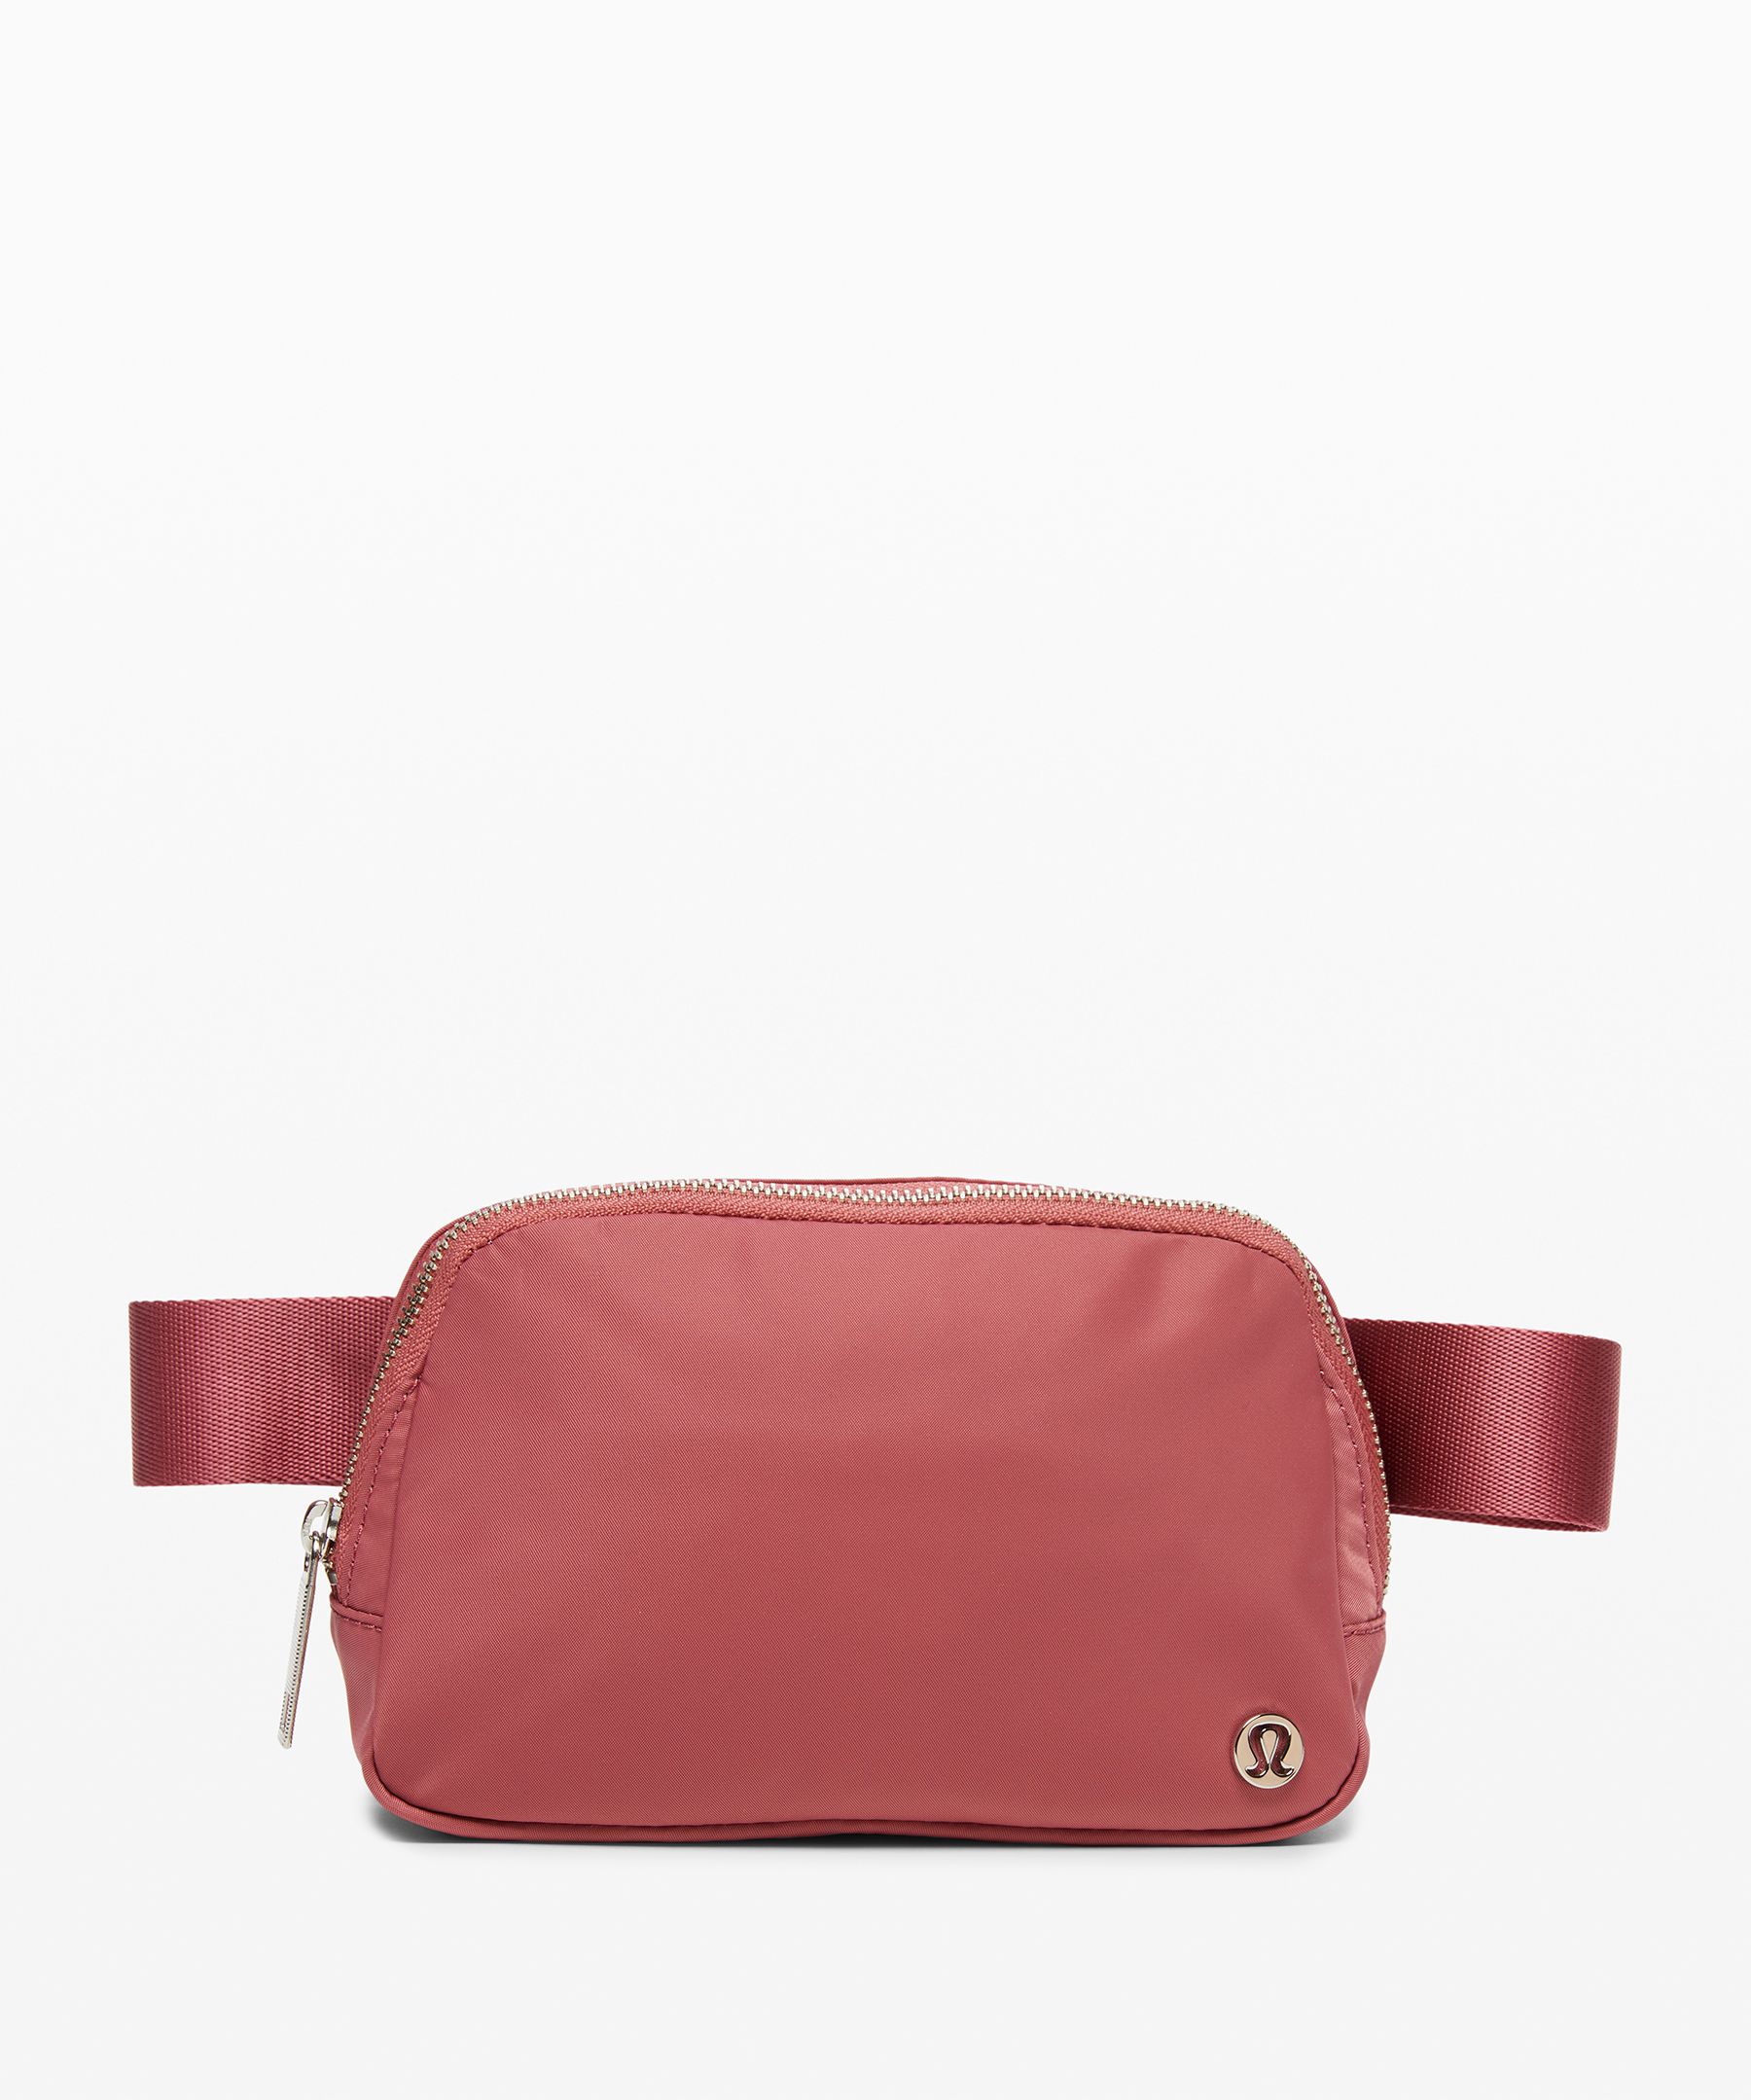 lululemon pink belt bag